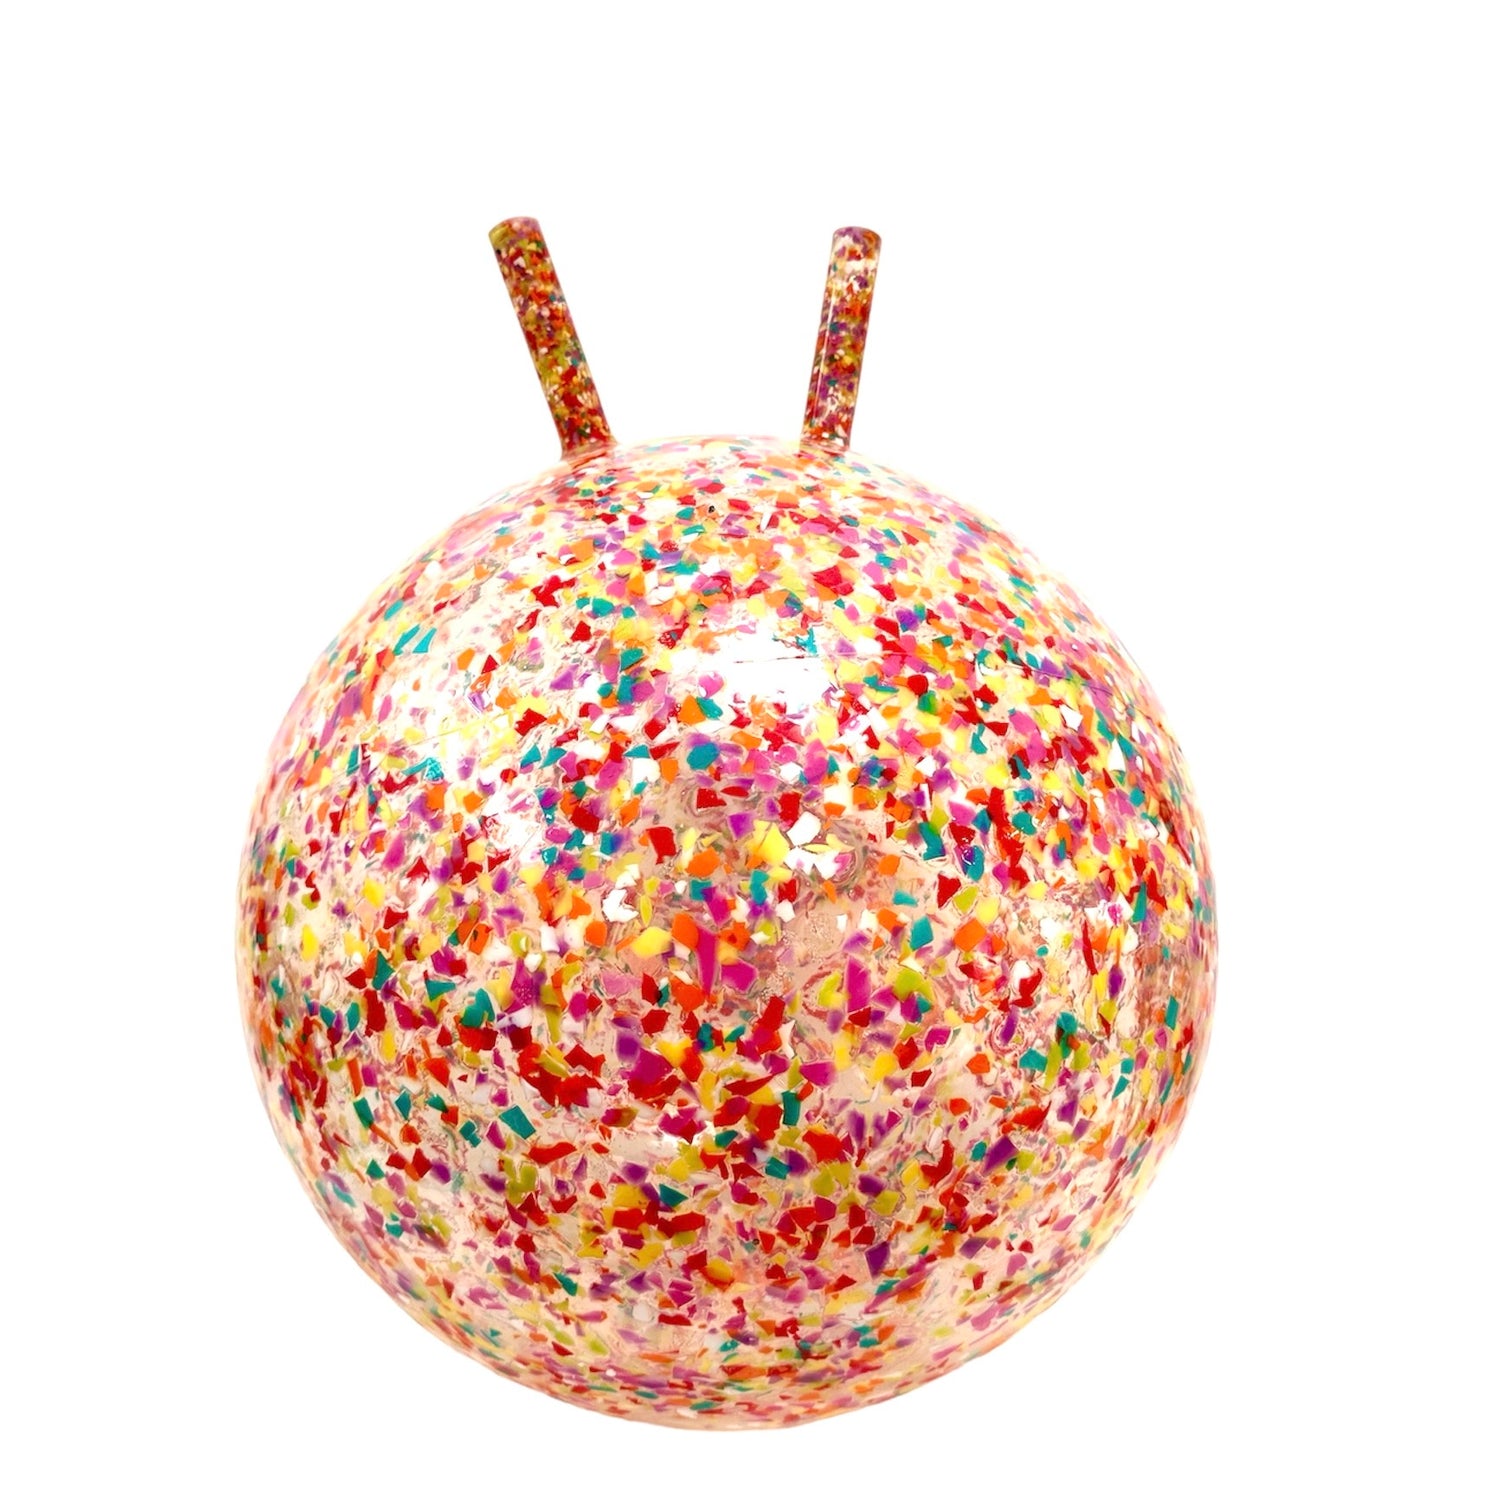 Ballon rebondissant pour enfant en plastique recyclé, made in France. Multicolore fabriqué à partir de chute de ballons en PVC. Avec deux poignées pour s'accrocher. 3 tailles de gonflage selon l'âge de l'enfant de 2 à 6 ans.